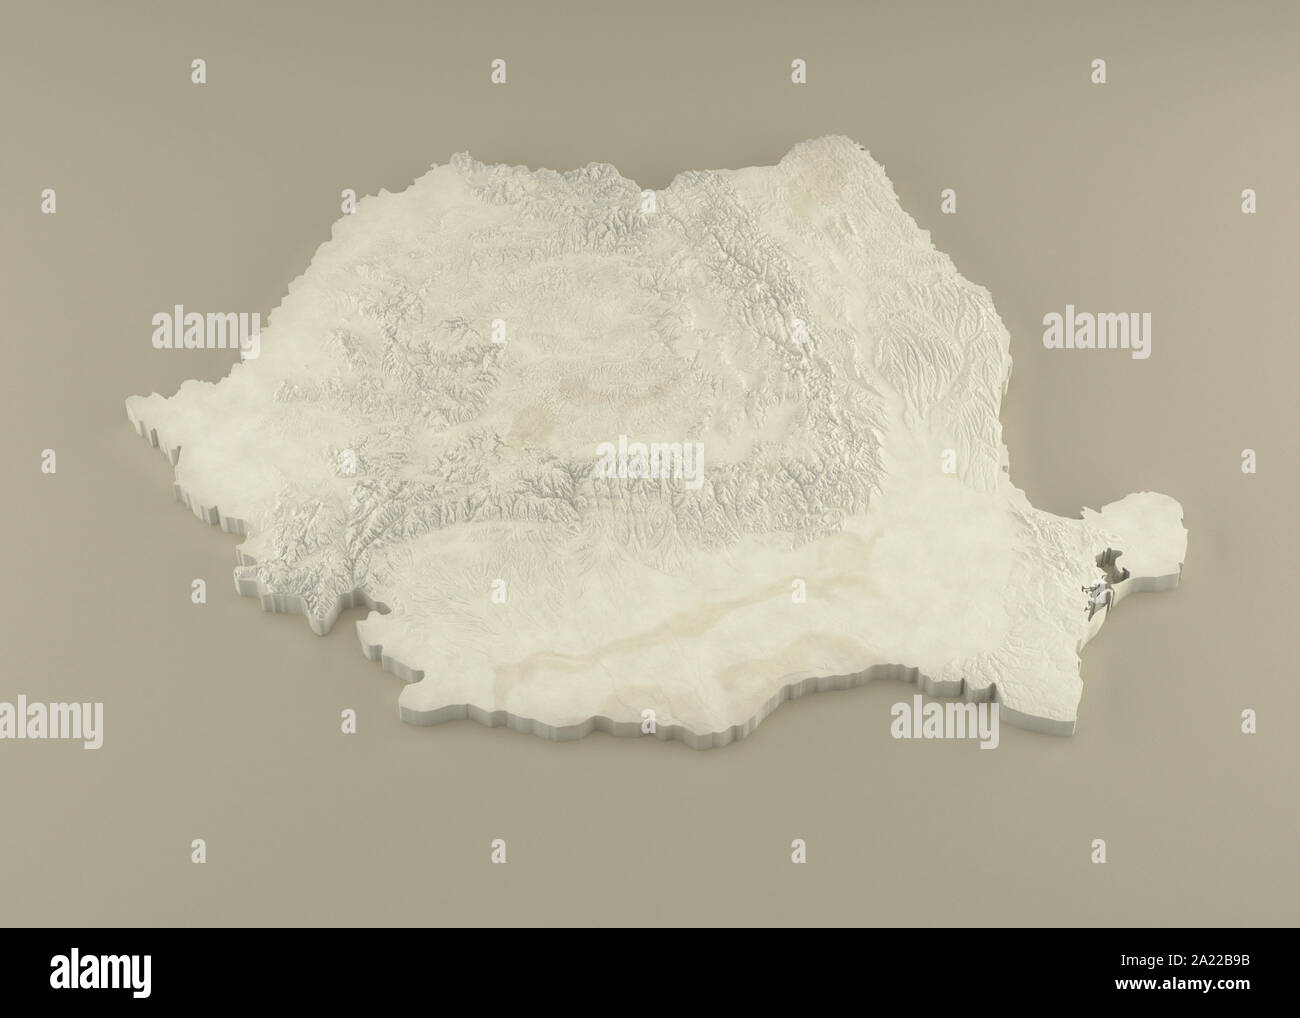 3D extrudé Carte politique de Roumanie avec soulagement que le marbre sculpture sur un fond beige lumière Banque D'Images